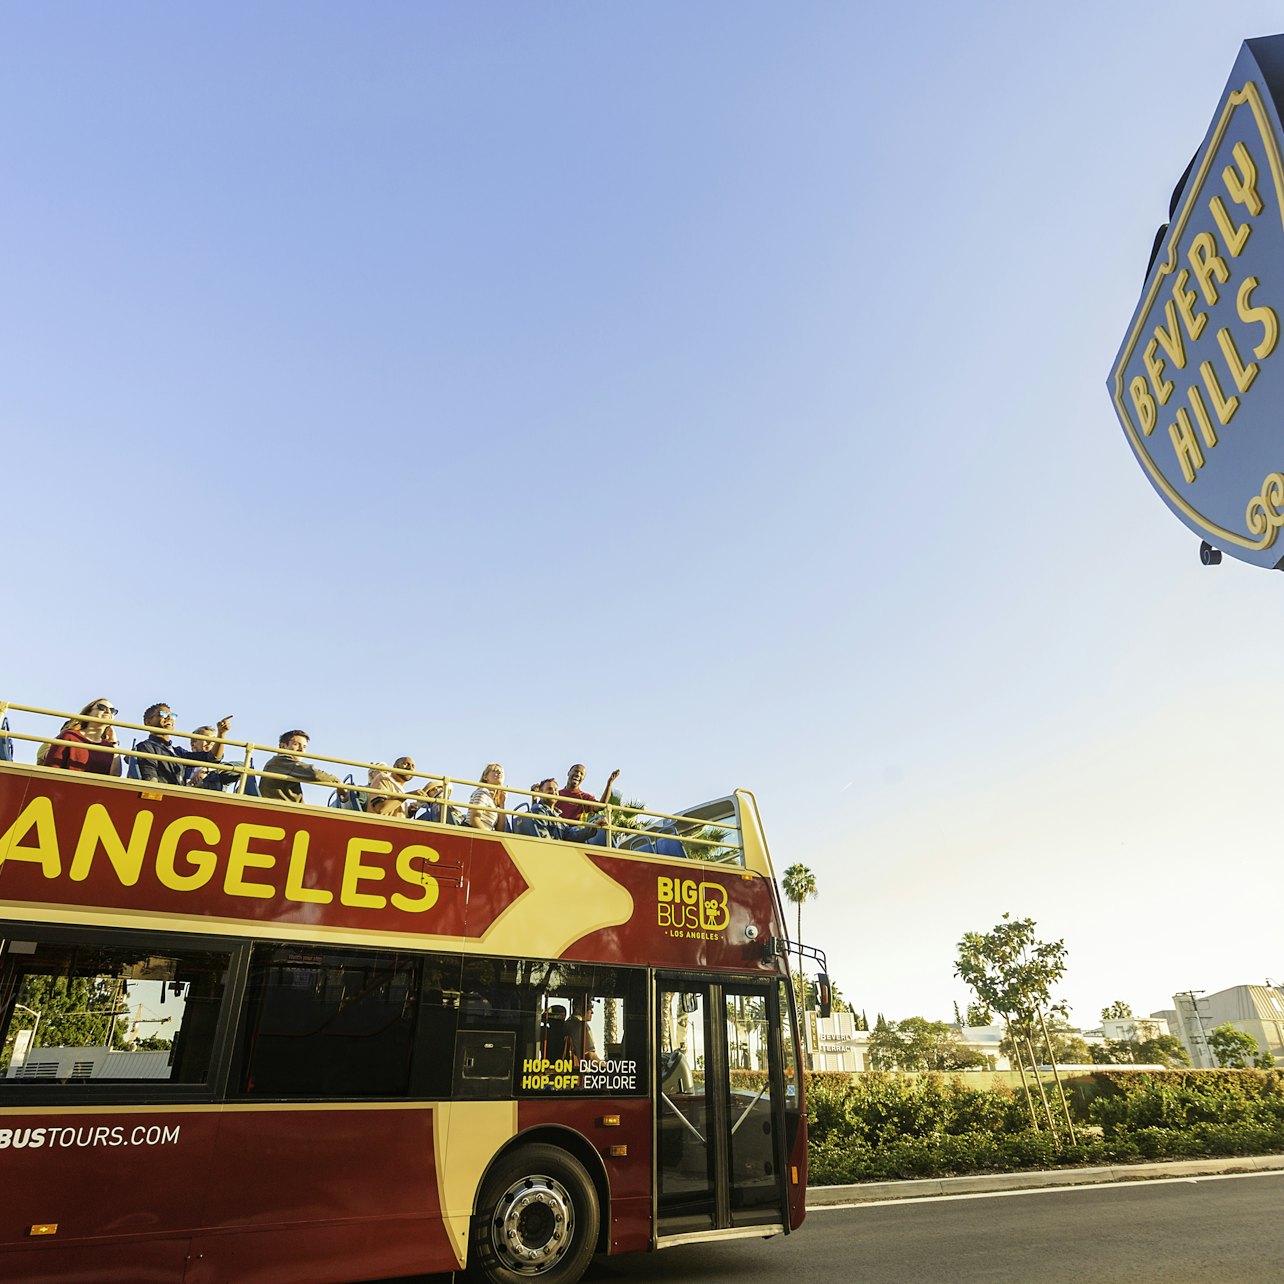 Bus turístico Los Ángeles - Alojamientos en Los Ángeles